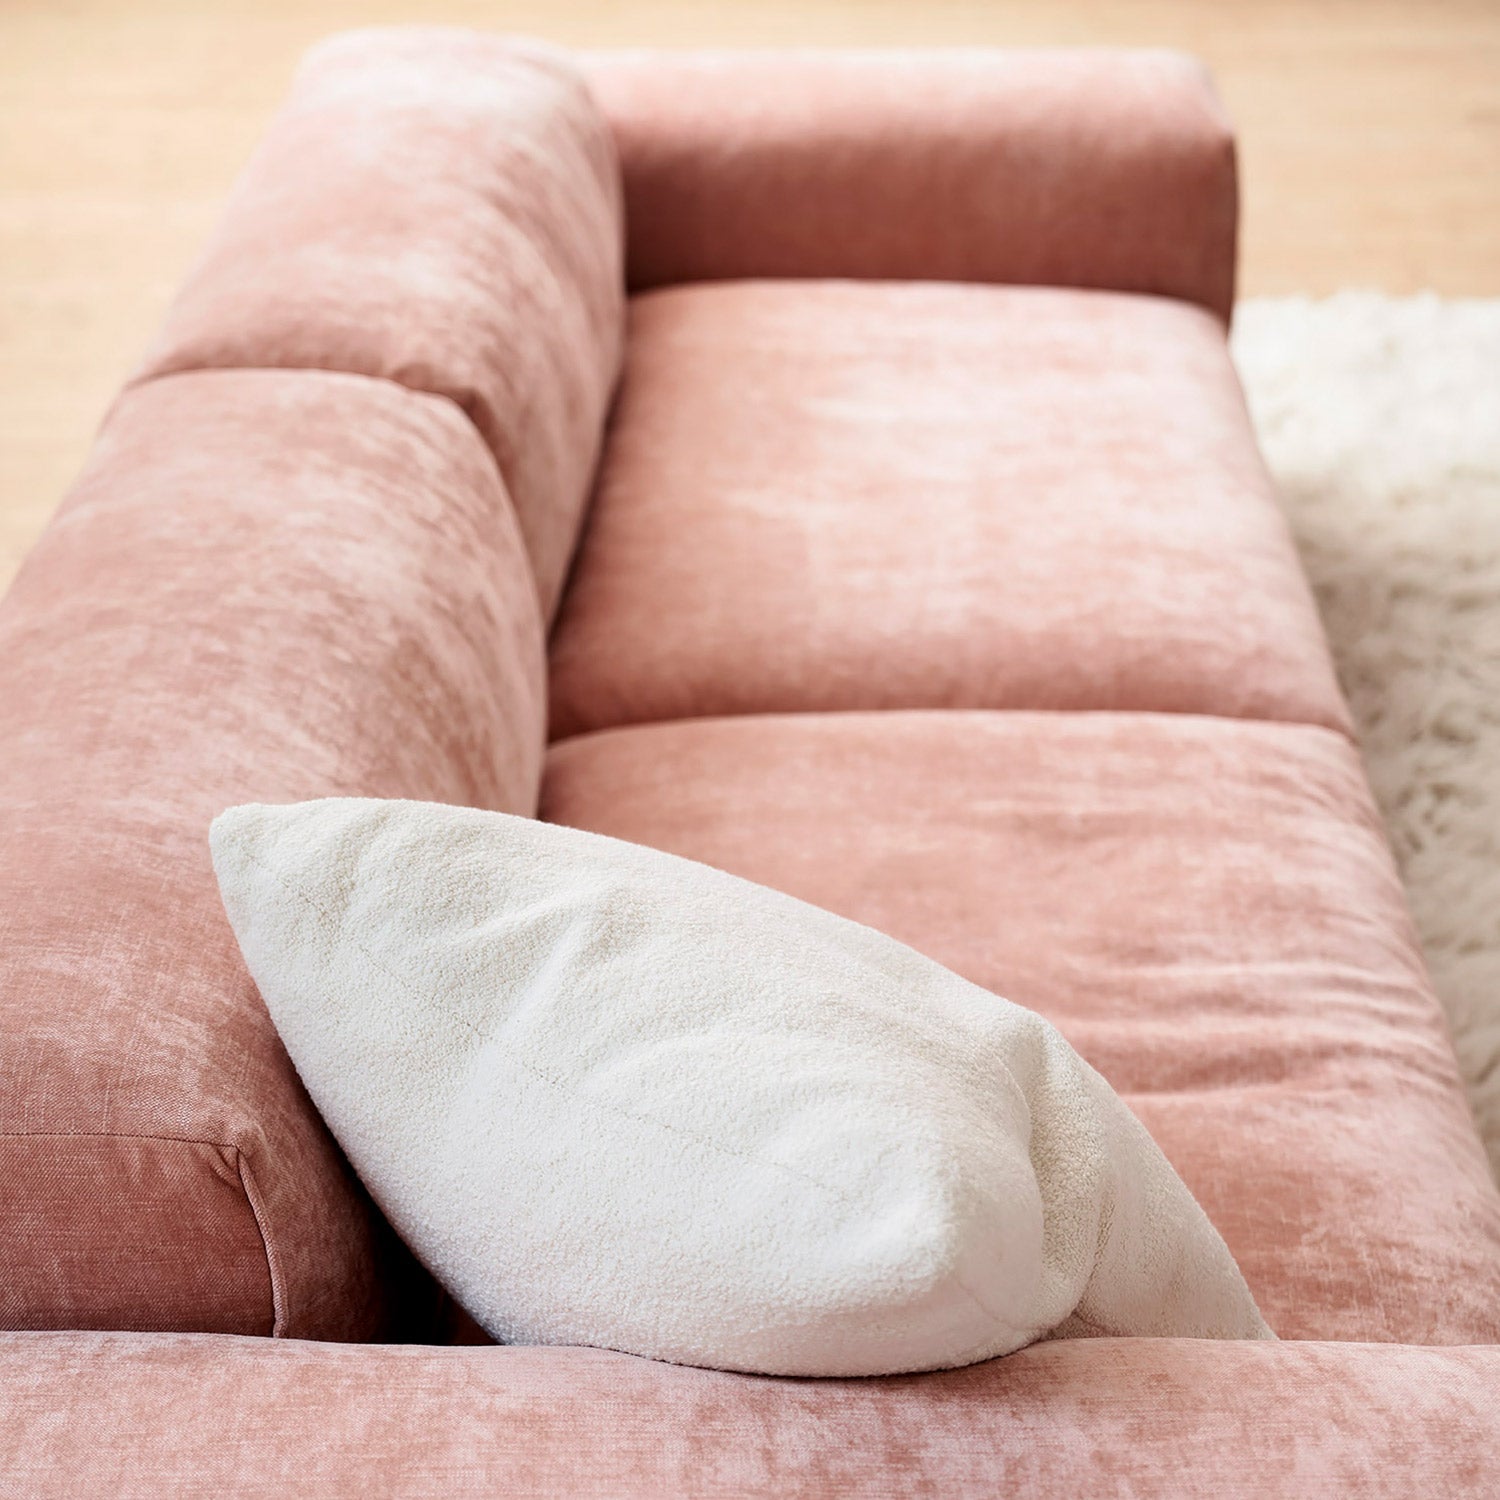 Edda 4-seter sofa Wildflower Dusty Pink, en del av kategorien 4-seter - At Home Interiør